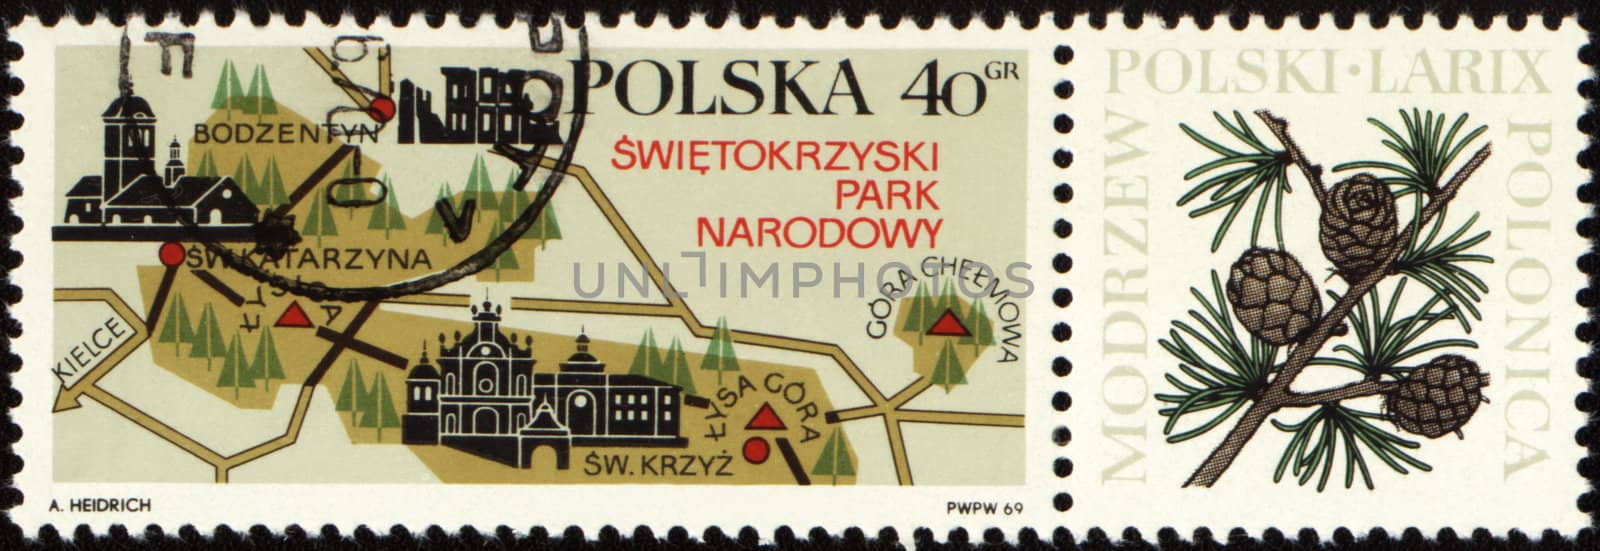 Swietokrzyski national park on Polish post stamp by wander